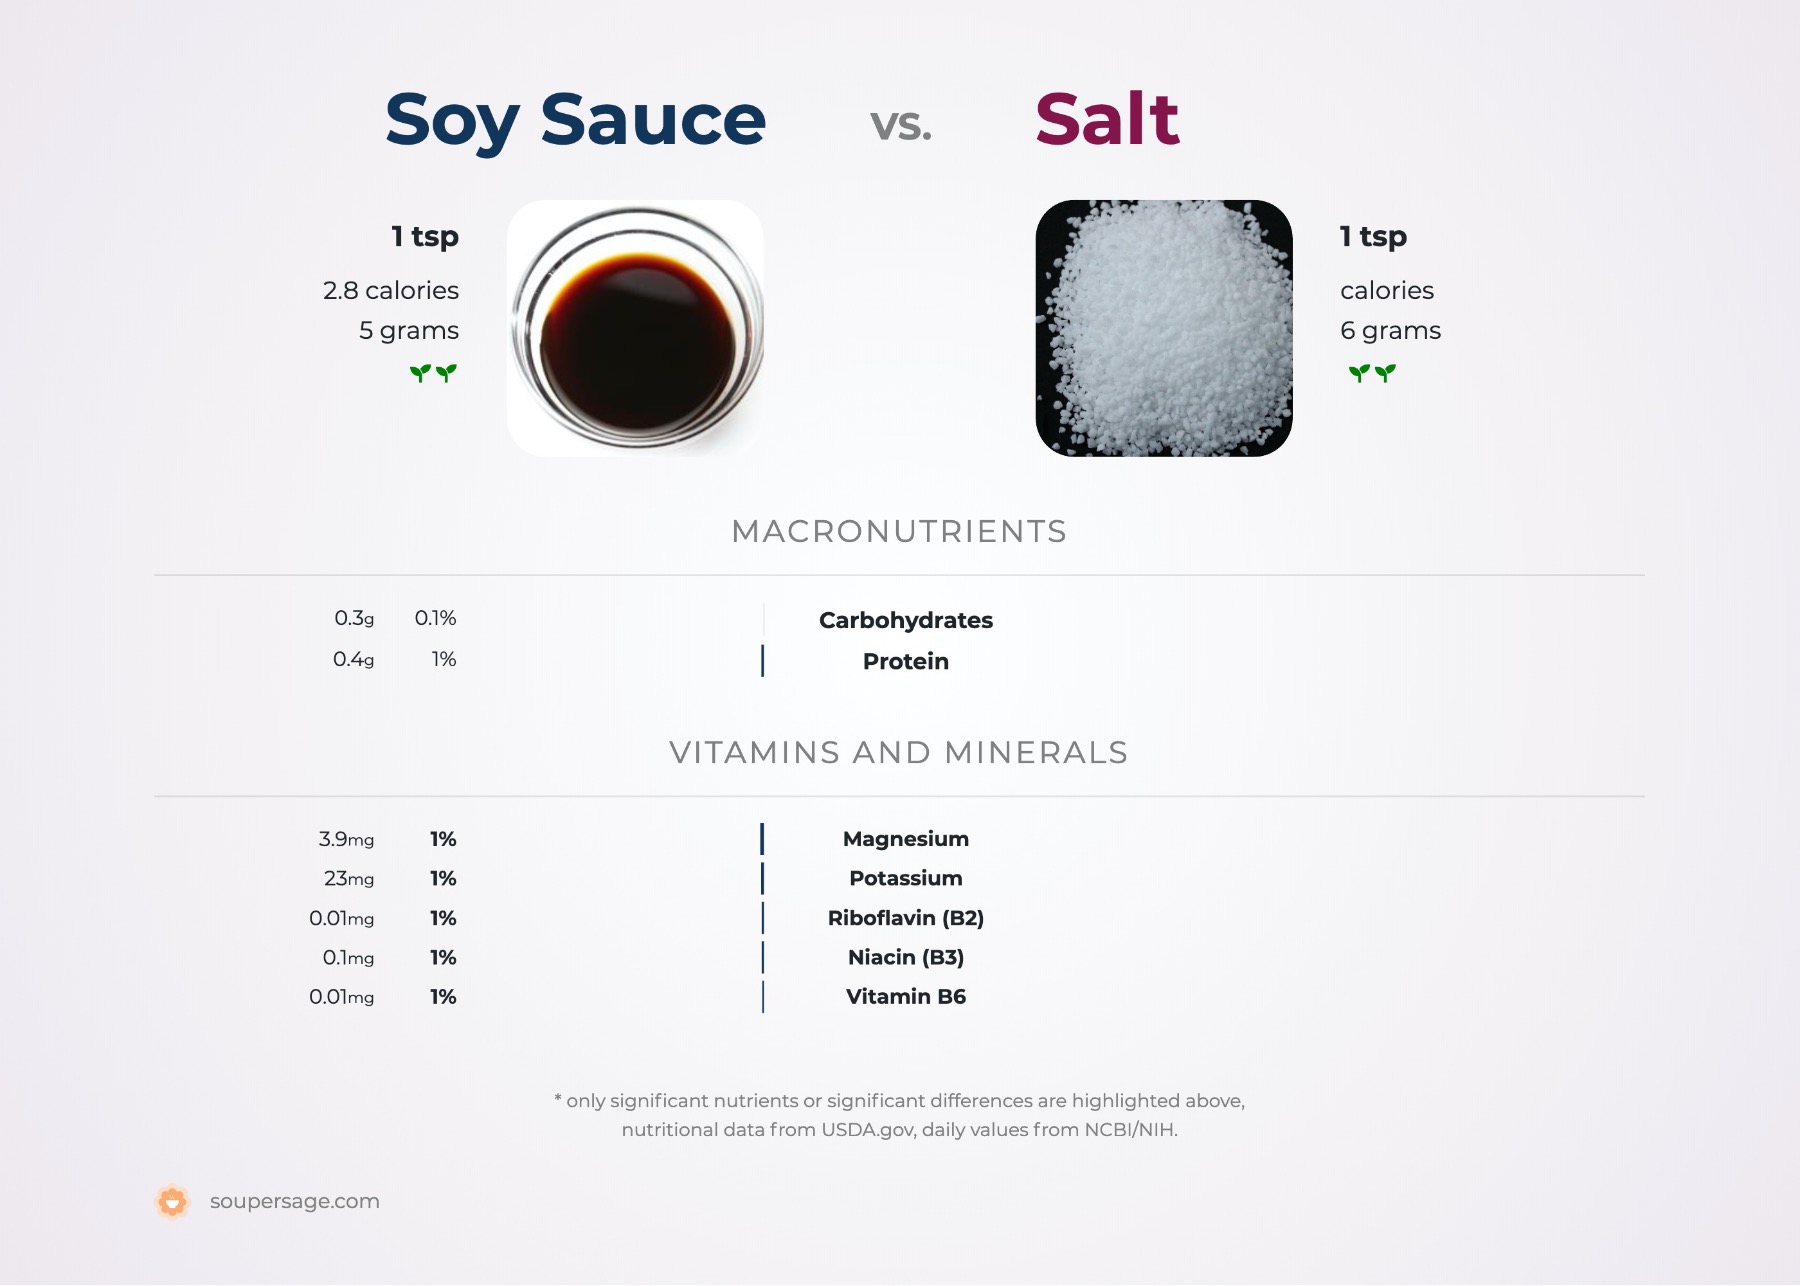 nutrition comparison of soy sauce vs. salt